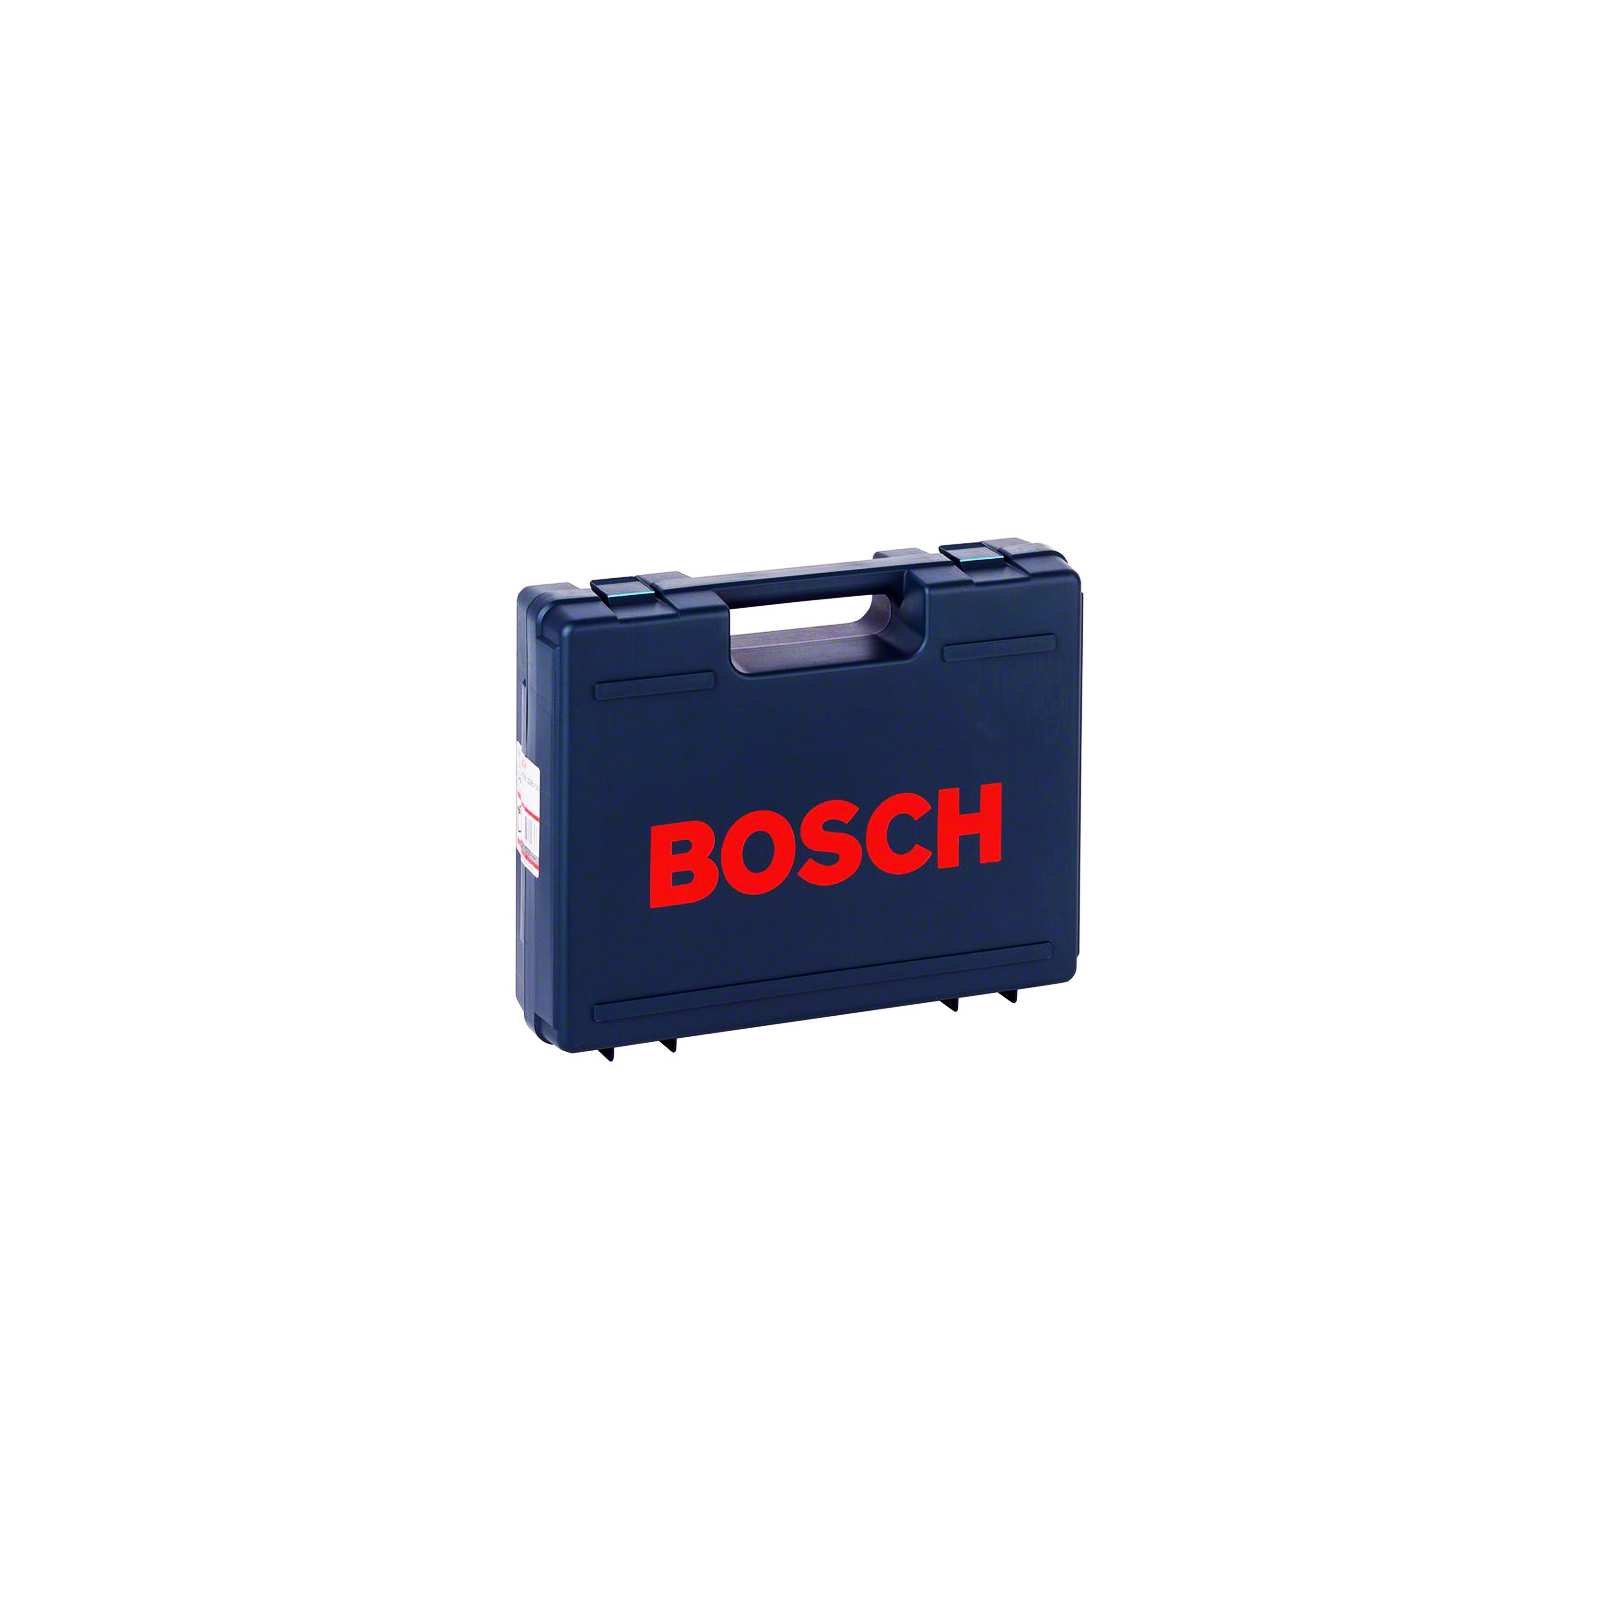 Ящик для инструментов Bosch для серий инструментов PSB/CSB/GBM10SR (2.605.438.328)